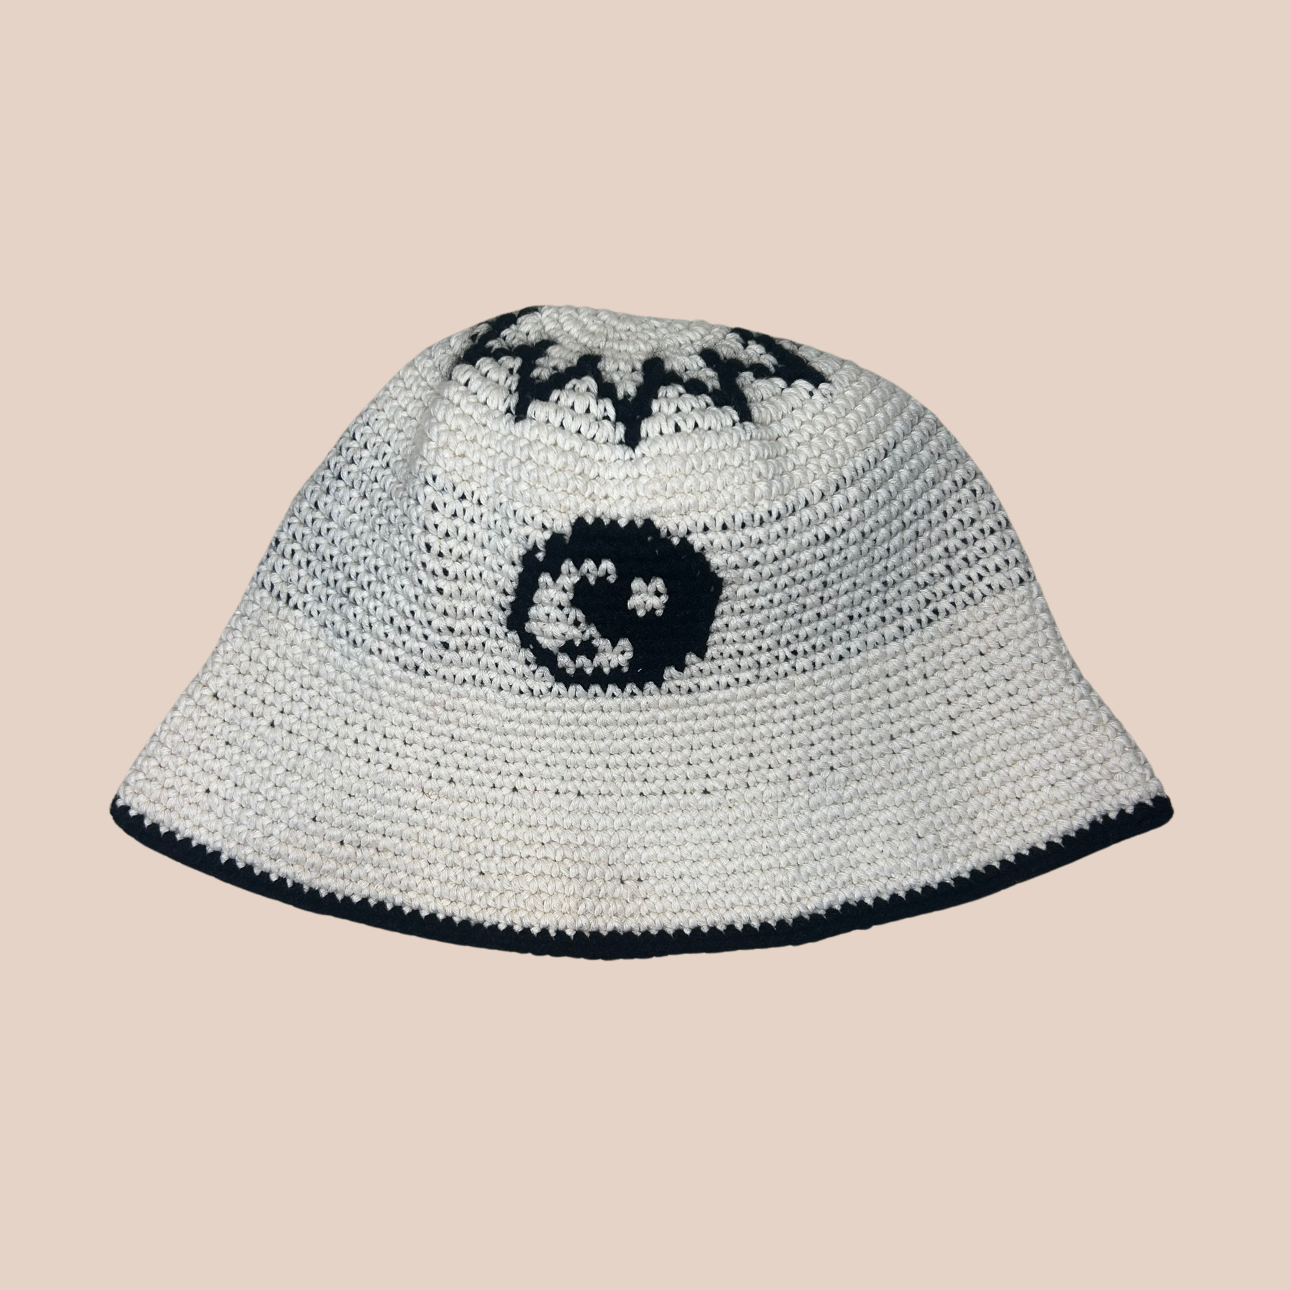 Un bucket hat crocheté en laine et acrylique, motif yin yang noir et blanc